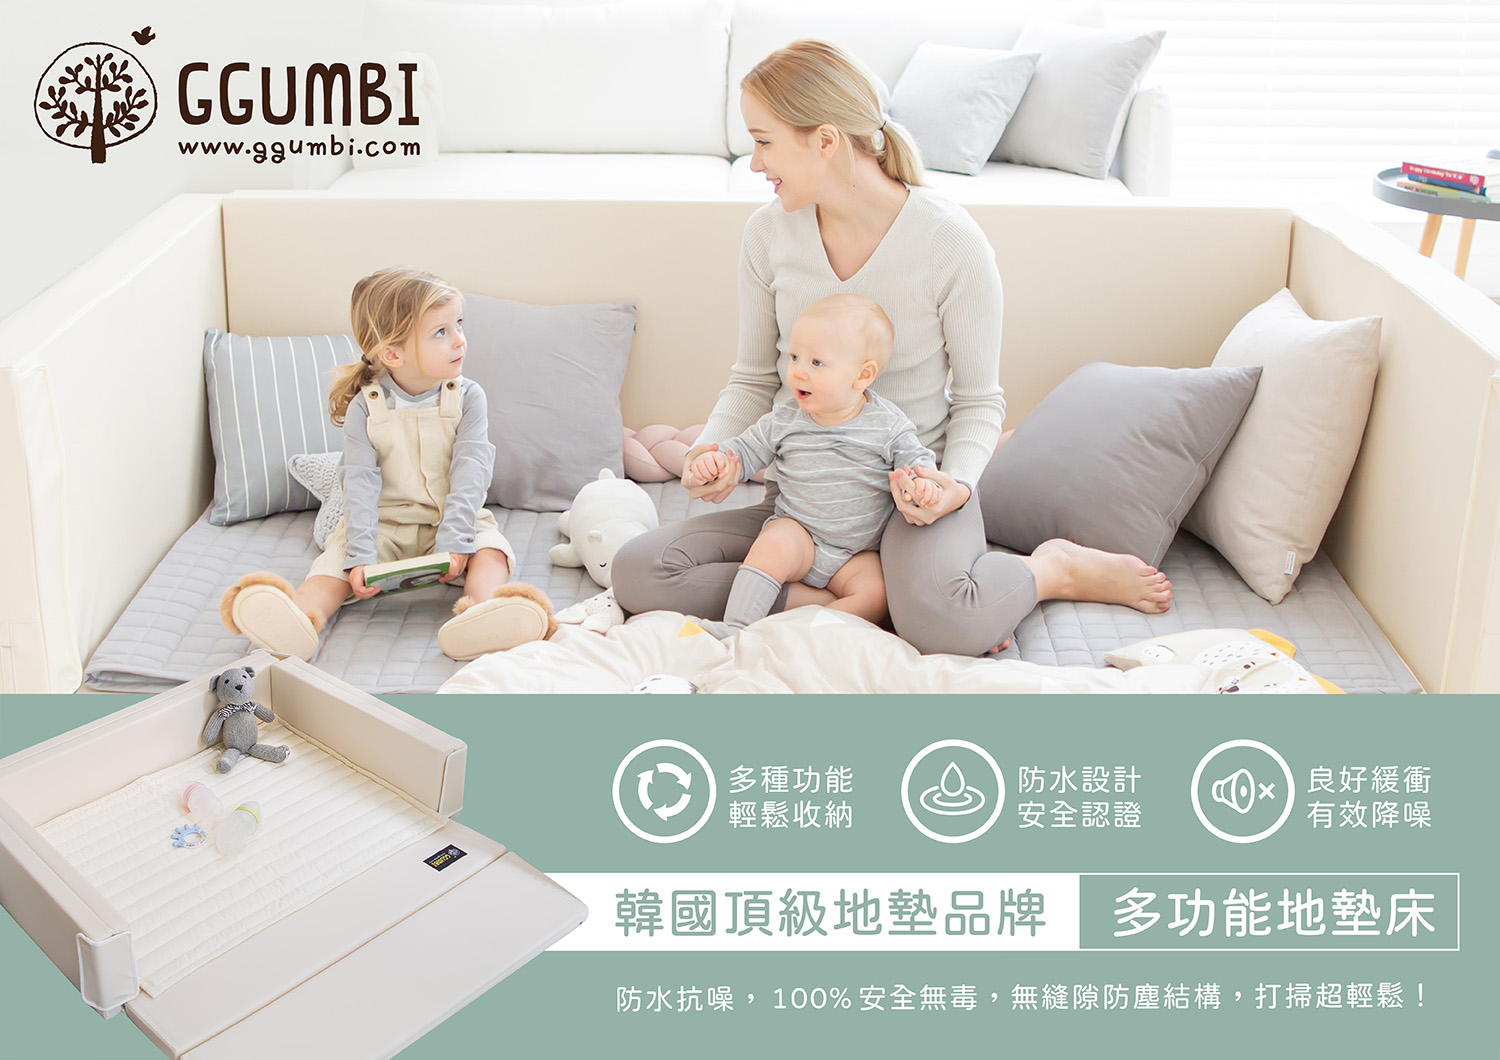 韓國【GGUMBI】 - 親子良品 | 媽媽育兒的好朋友! ((華人第一親子用品嚴選網 ))